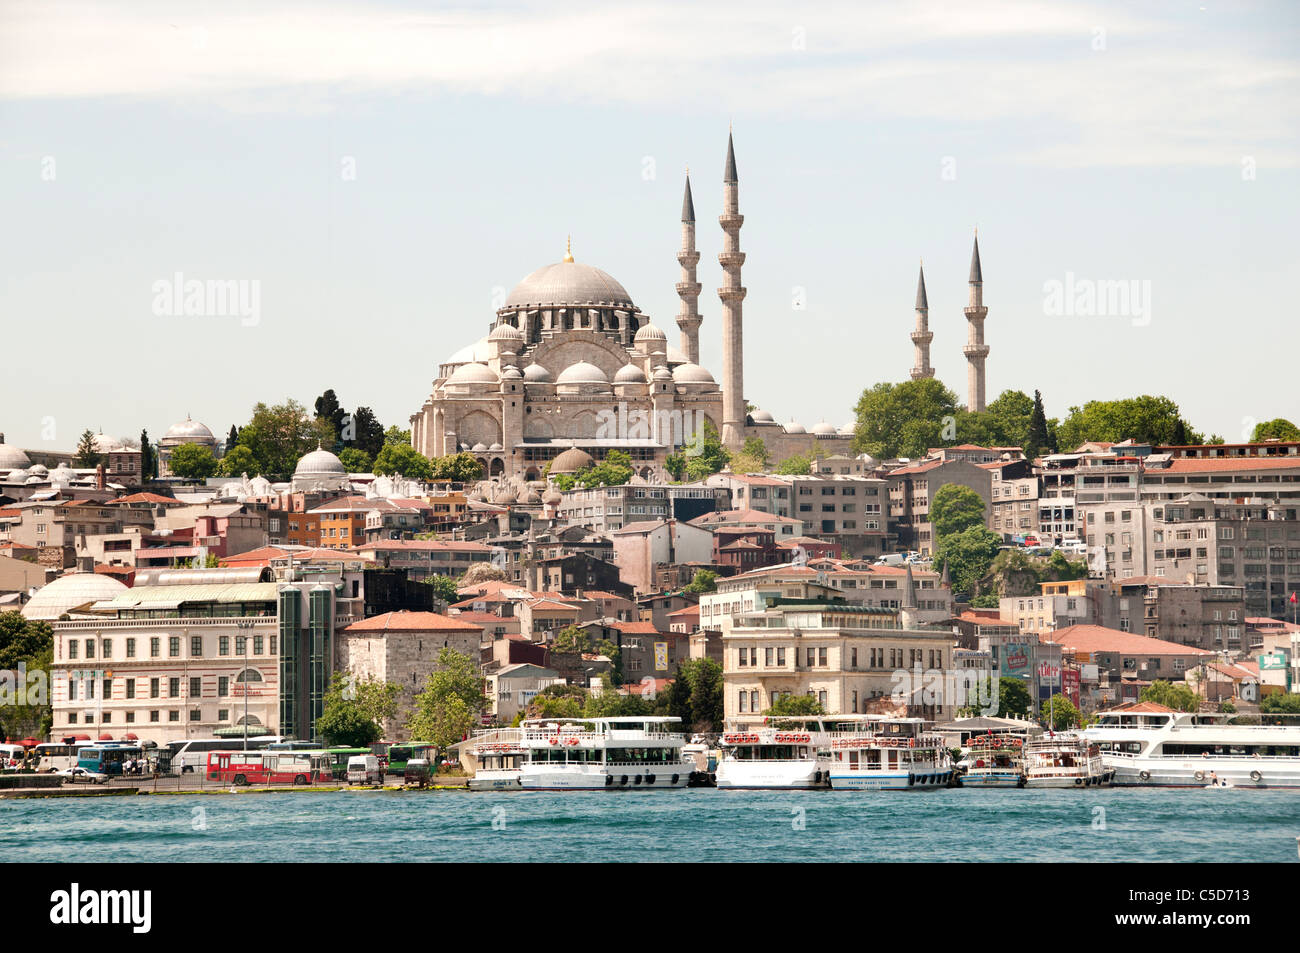 Moschee Süleymaniye Camii Istanbul Türkei Goldene Horn Stockfoto